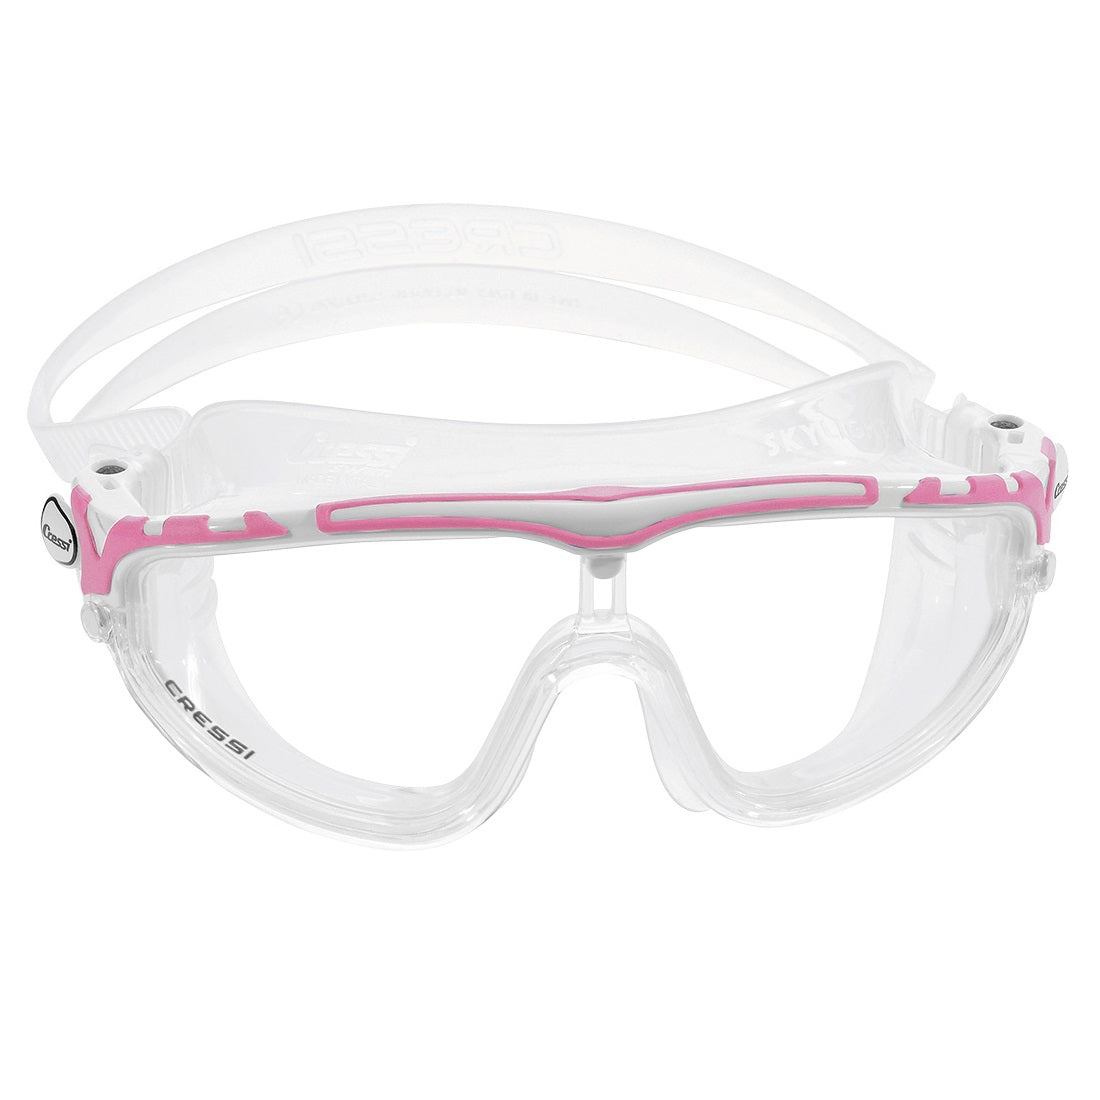 Skylight Swim Goggles